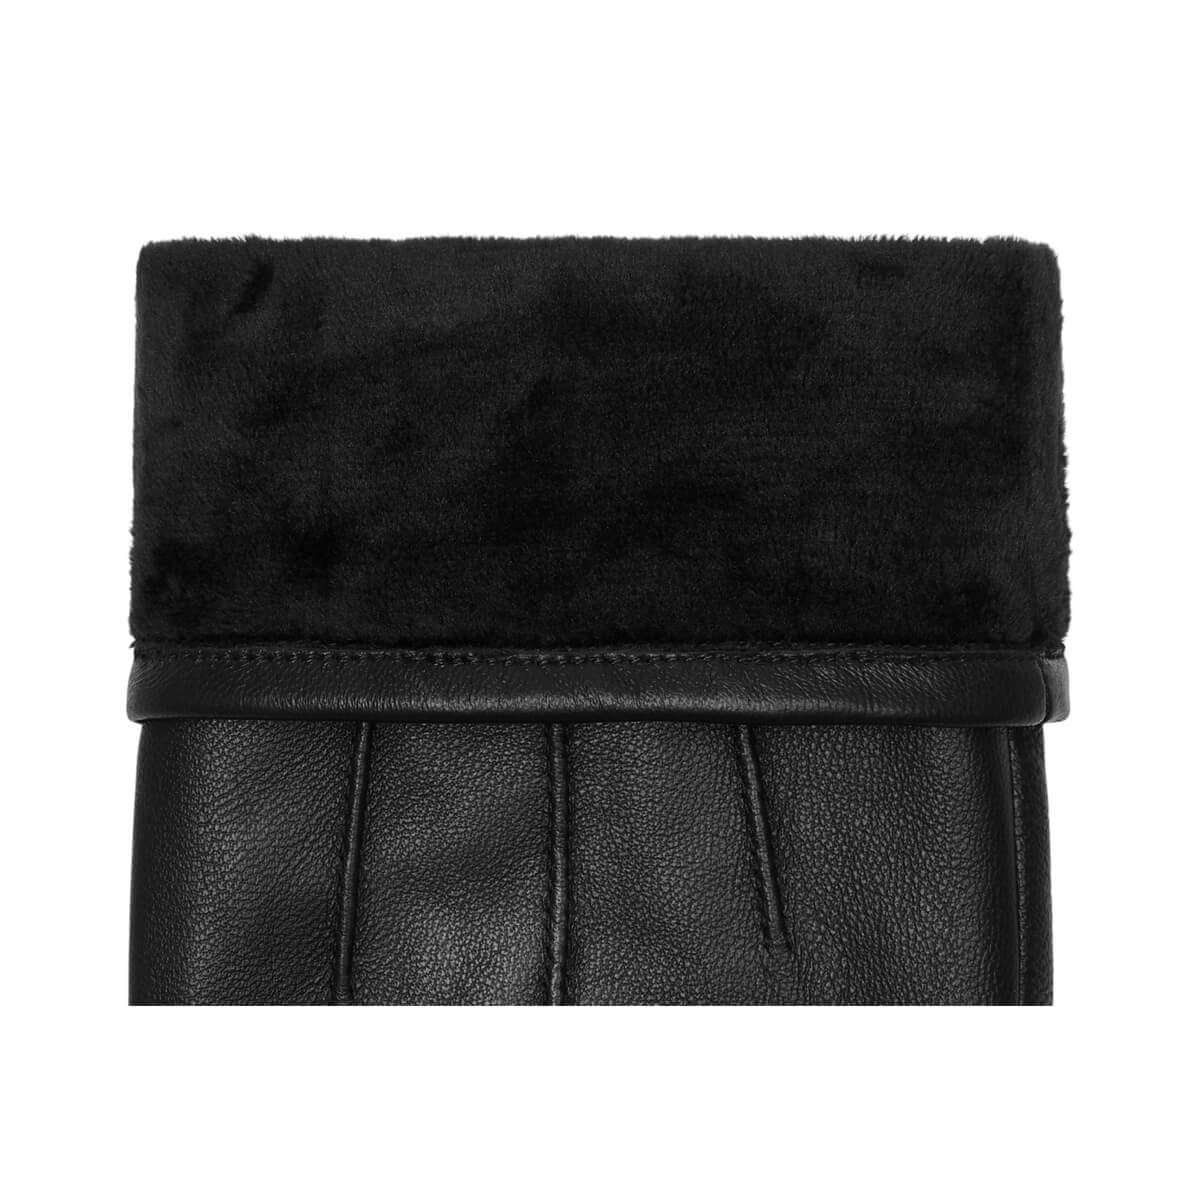 Black Leather Gloves Men Jake - Schwartz & von Halen® - Premium Leather Gloves - 3